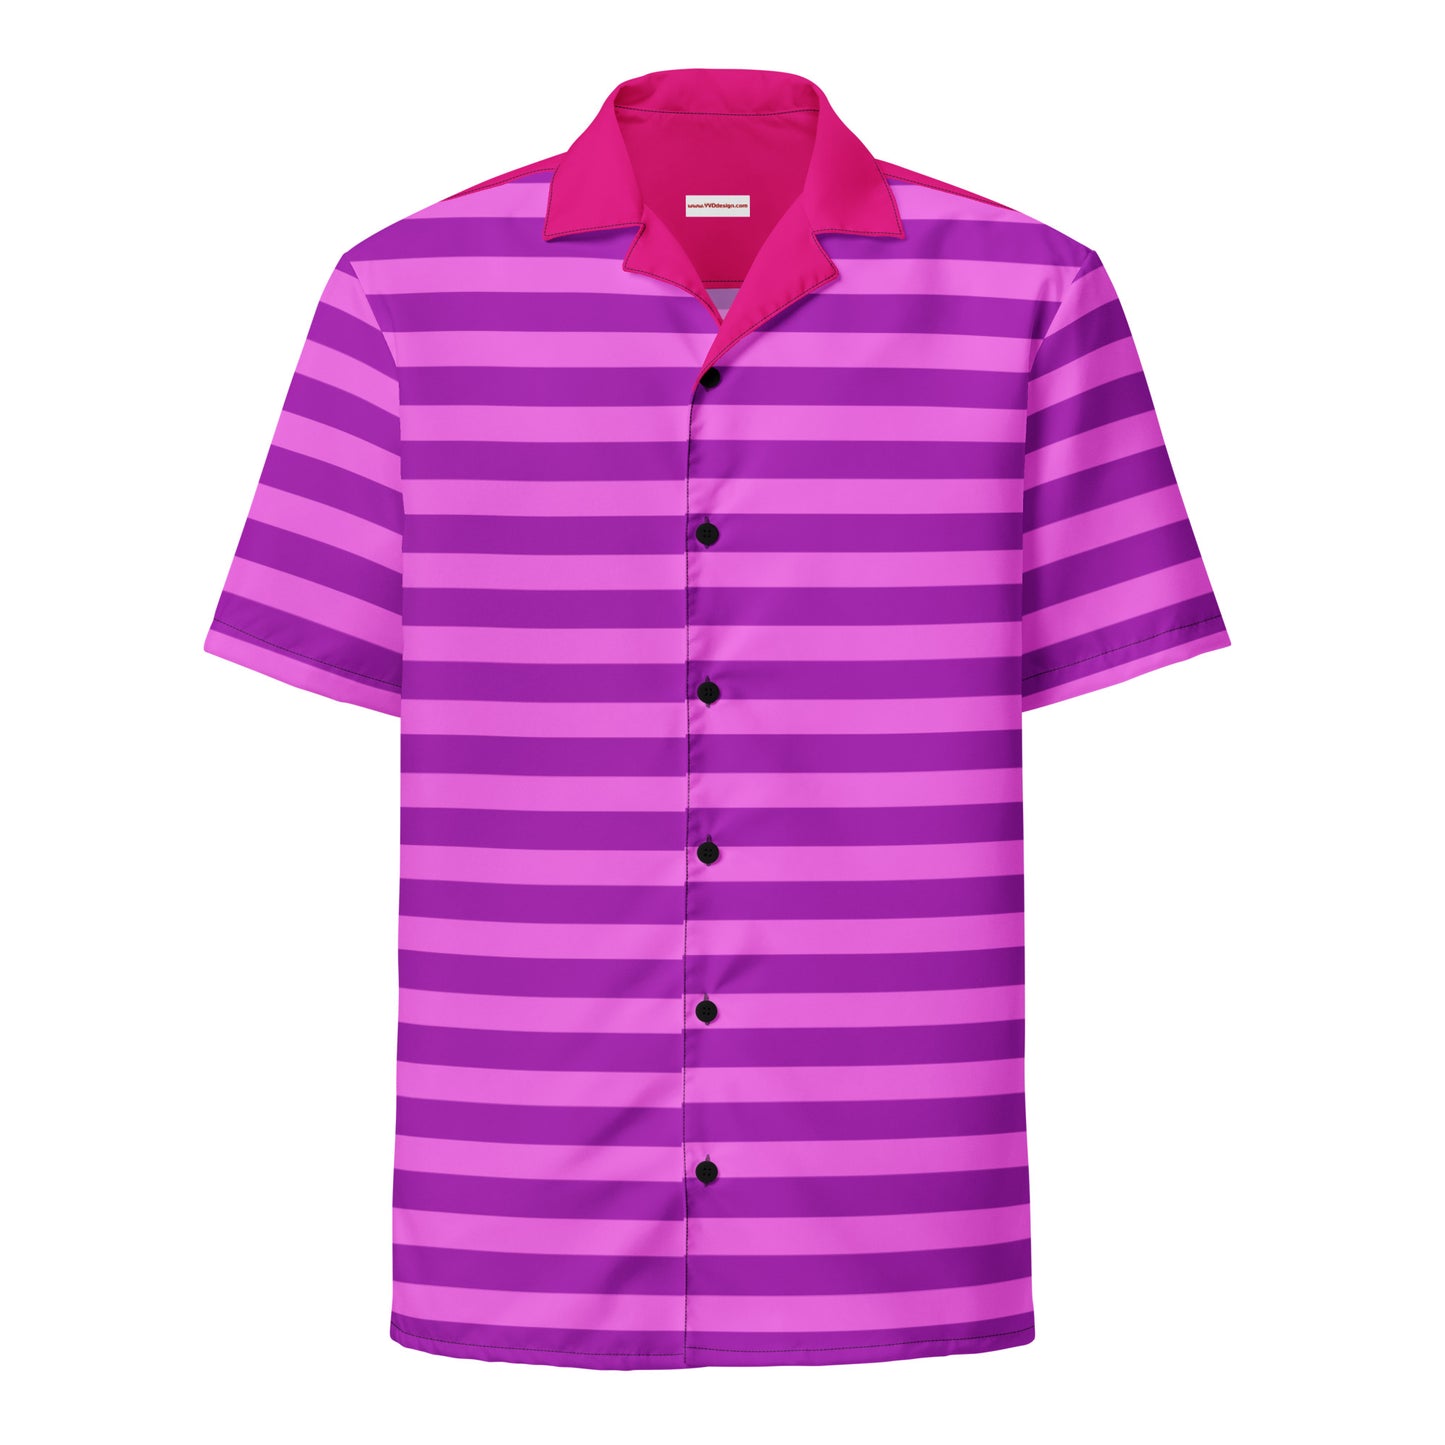 Roze gestreept overhemdoutfit / overhemd met korte mouwen en knopen